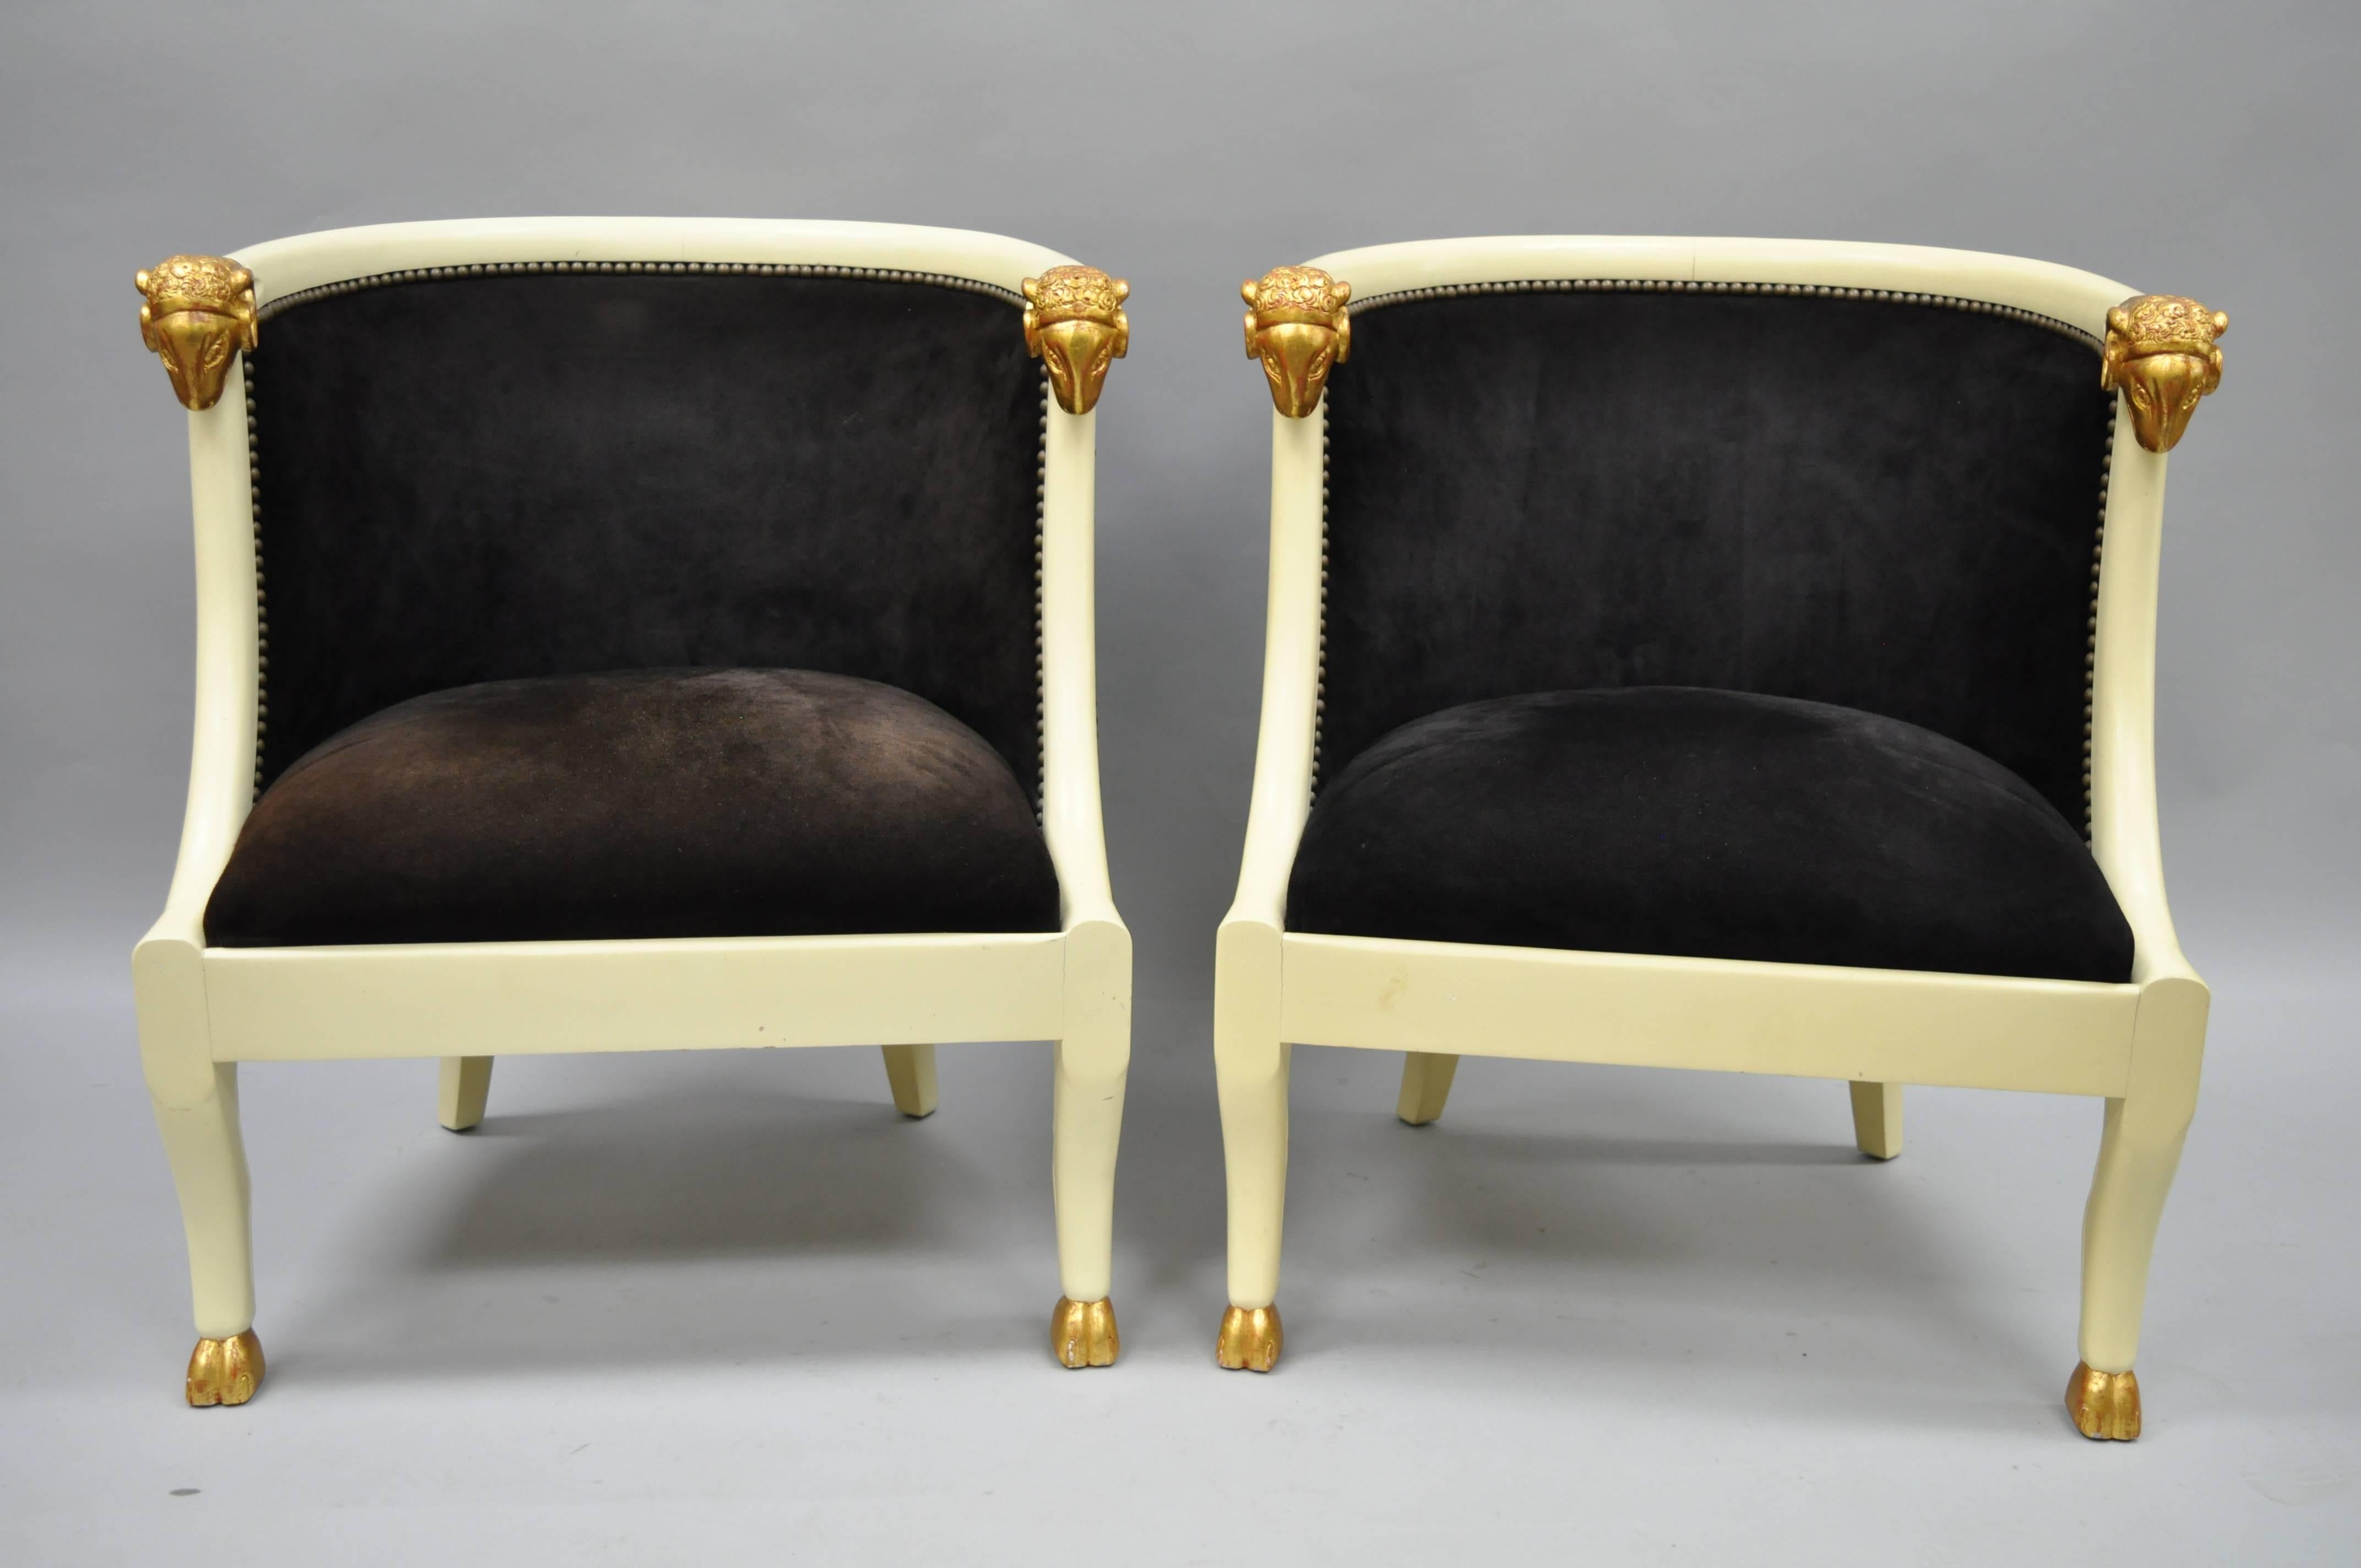 Beeindruckendes Paar Widderkopfstühle im Regency- / neoklassizistischen Stil mit Tonnenrücken. Das Möbelstück zeichnet sich durch einen schweren, geschnitzten Massivholzrahmen, Armlehnen mit Widderkopf, Huffüße, formschöne Rückenlehnen und eine